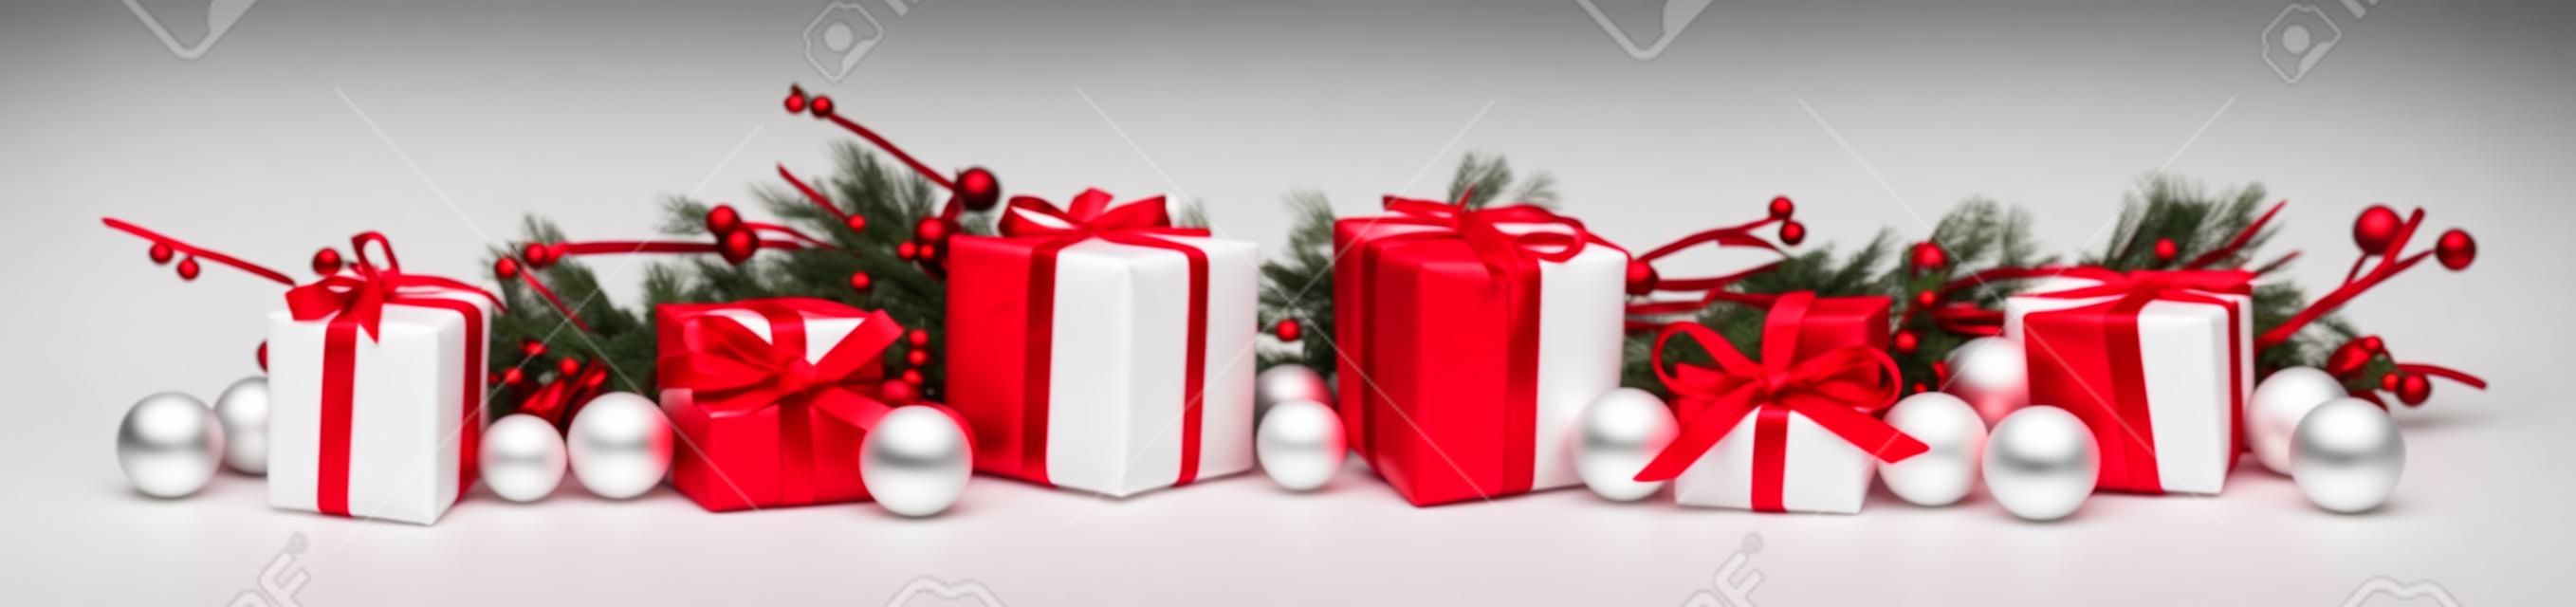 Weihnachten Grenze von Niederlassungen und rote und weiße Geschenke über einem weißen Hintergrund